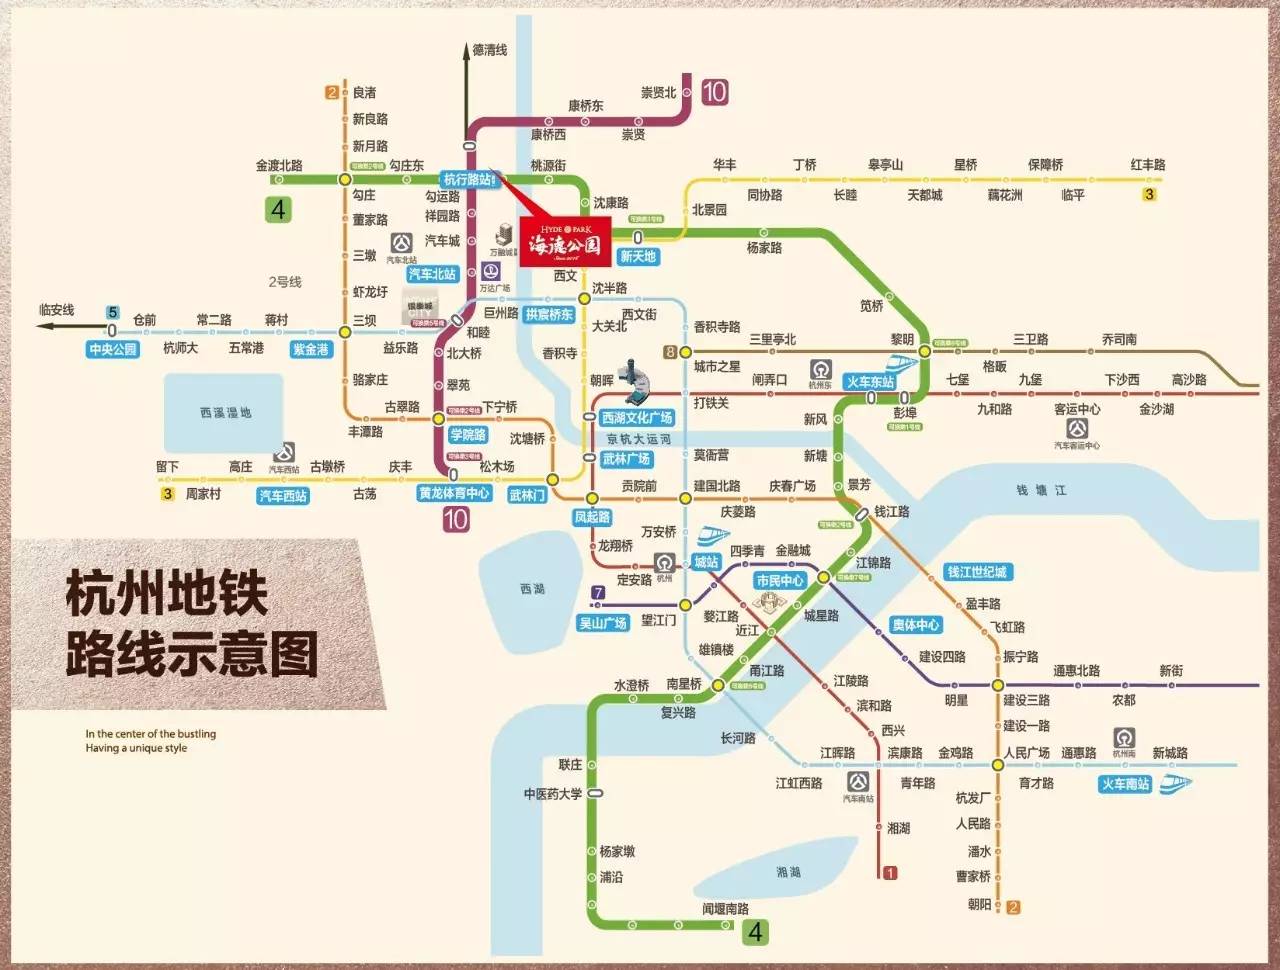 图片为杭州地铁路线示意图